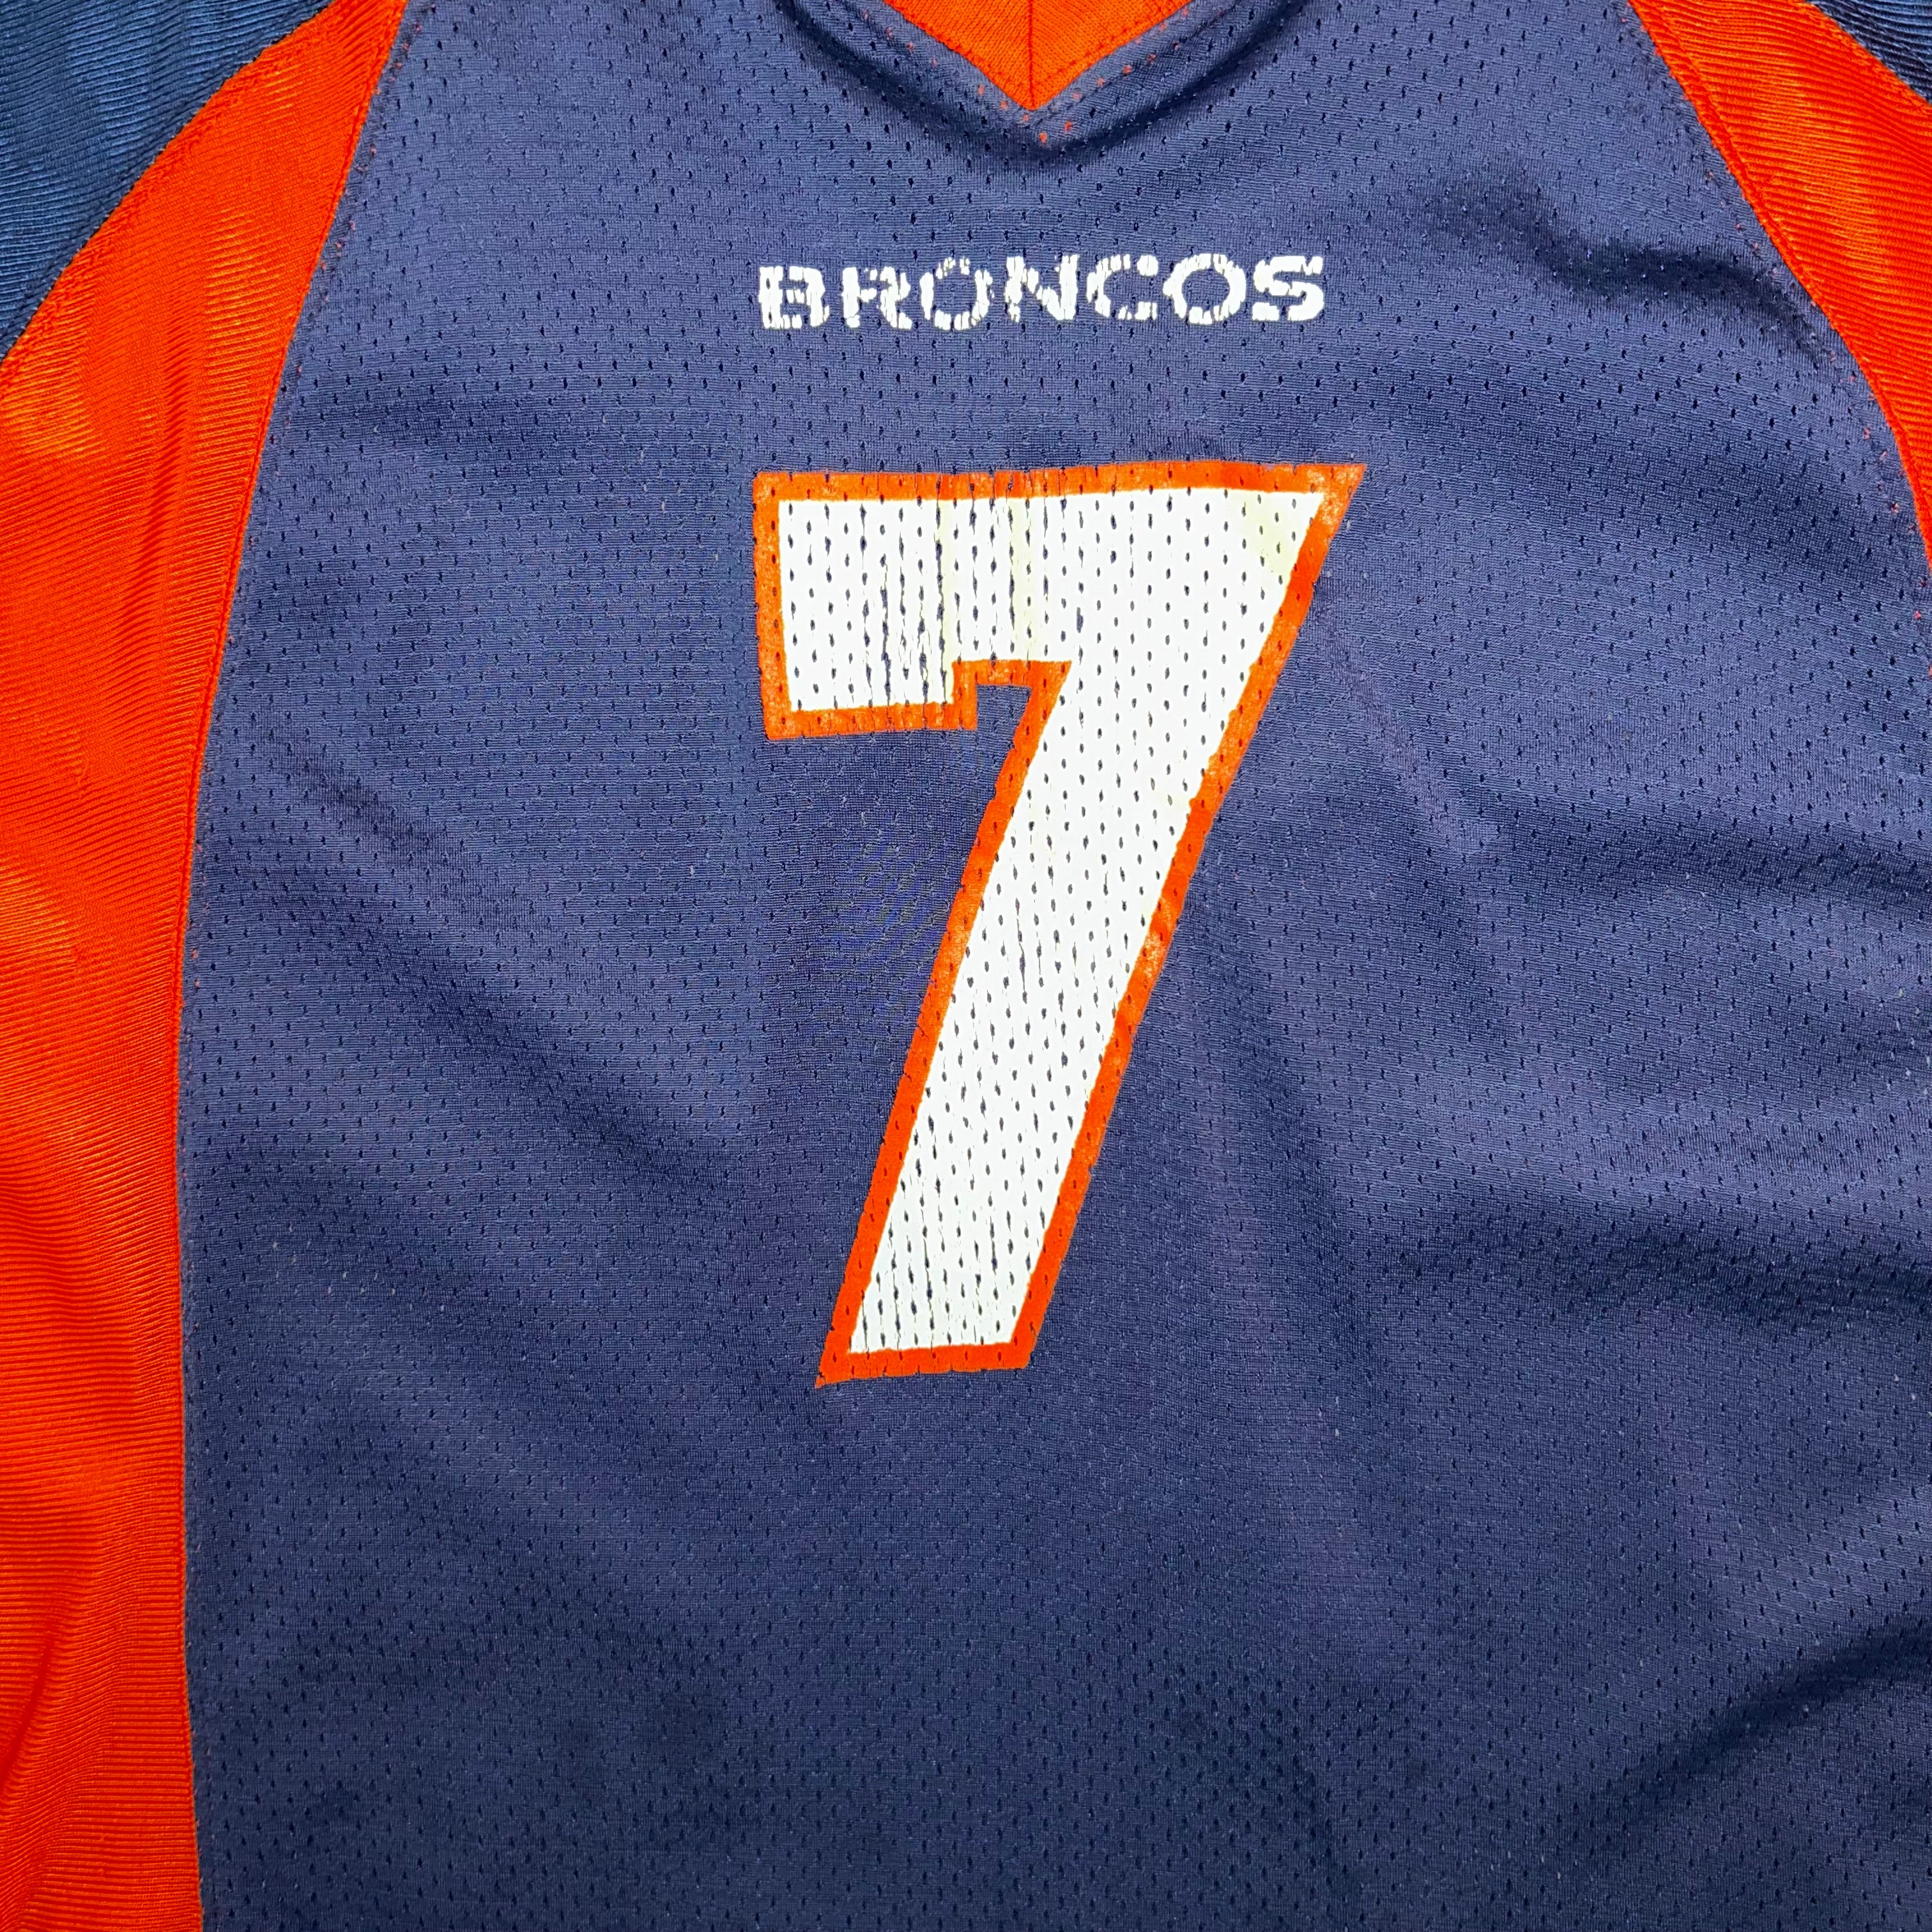 Jersey Denver Broncos NFL  (S)